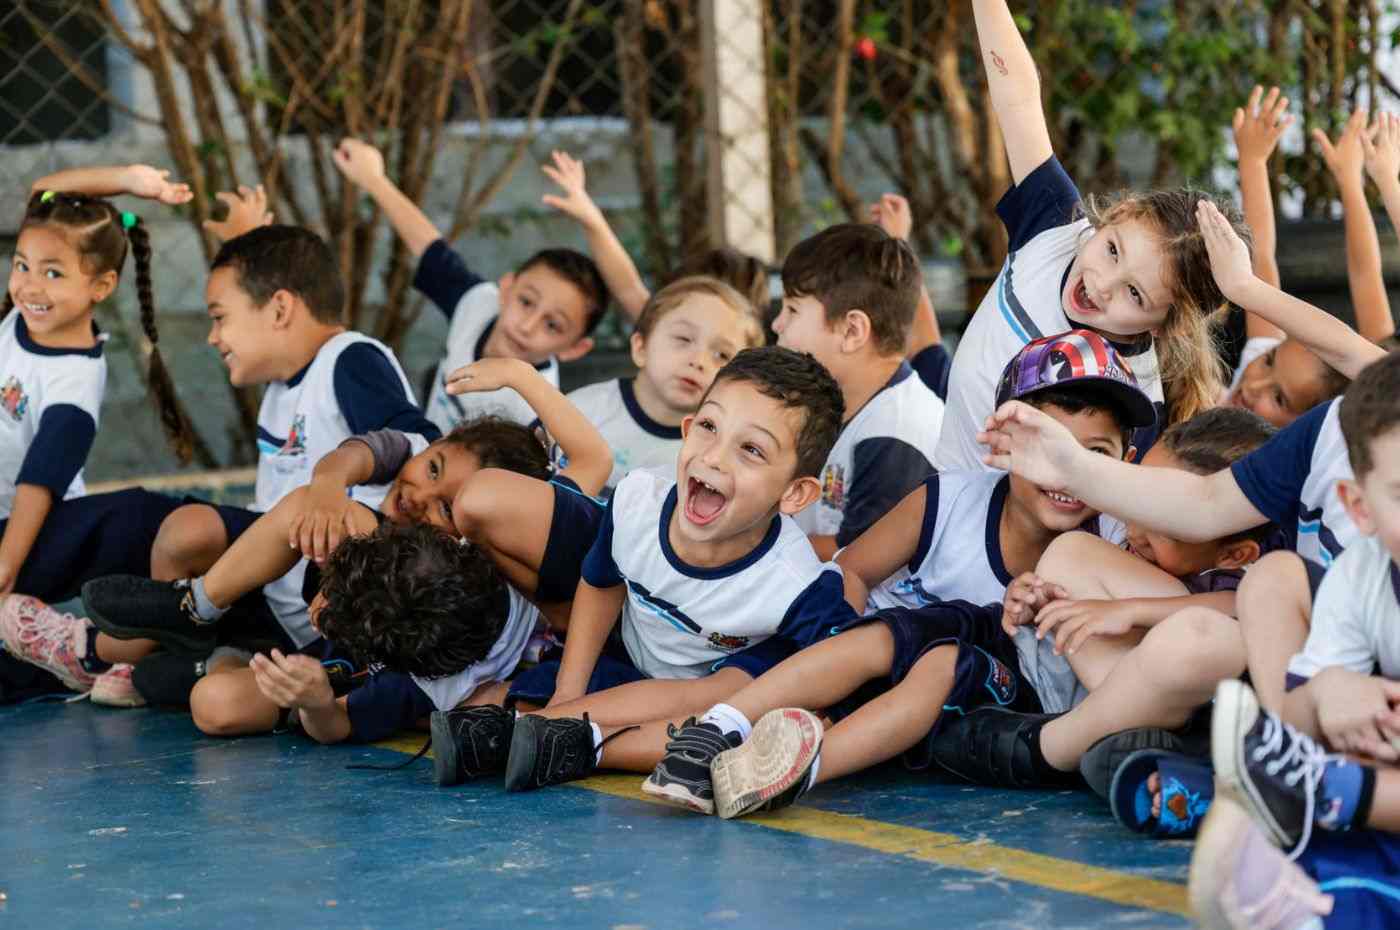 Crianças do Ensino Infantil de Jundiaí participando de atividades na quadra da escola